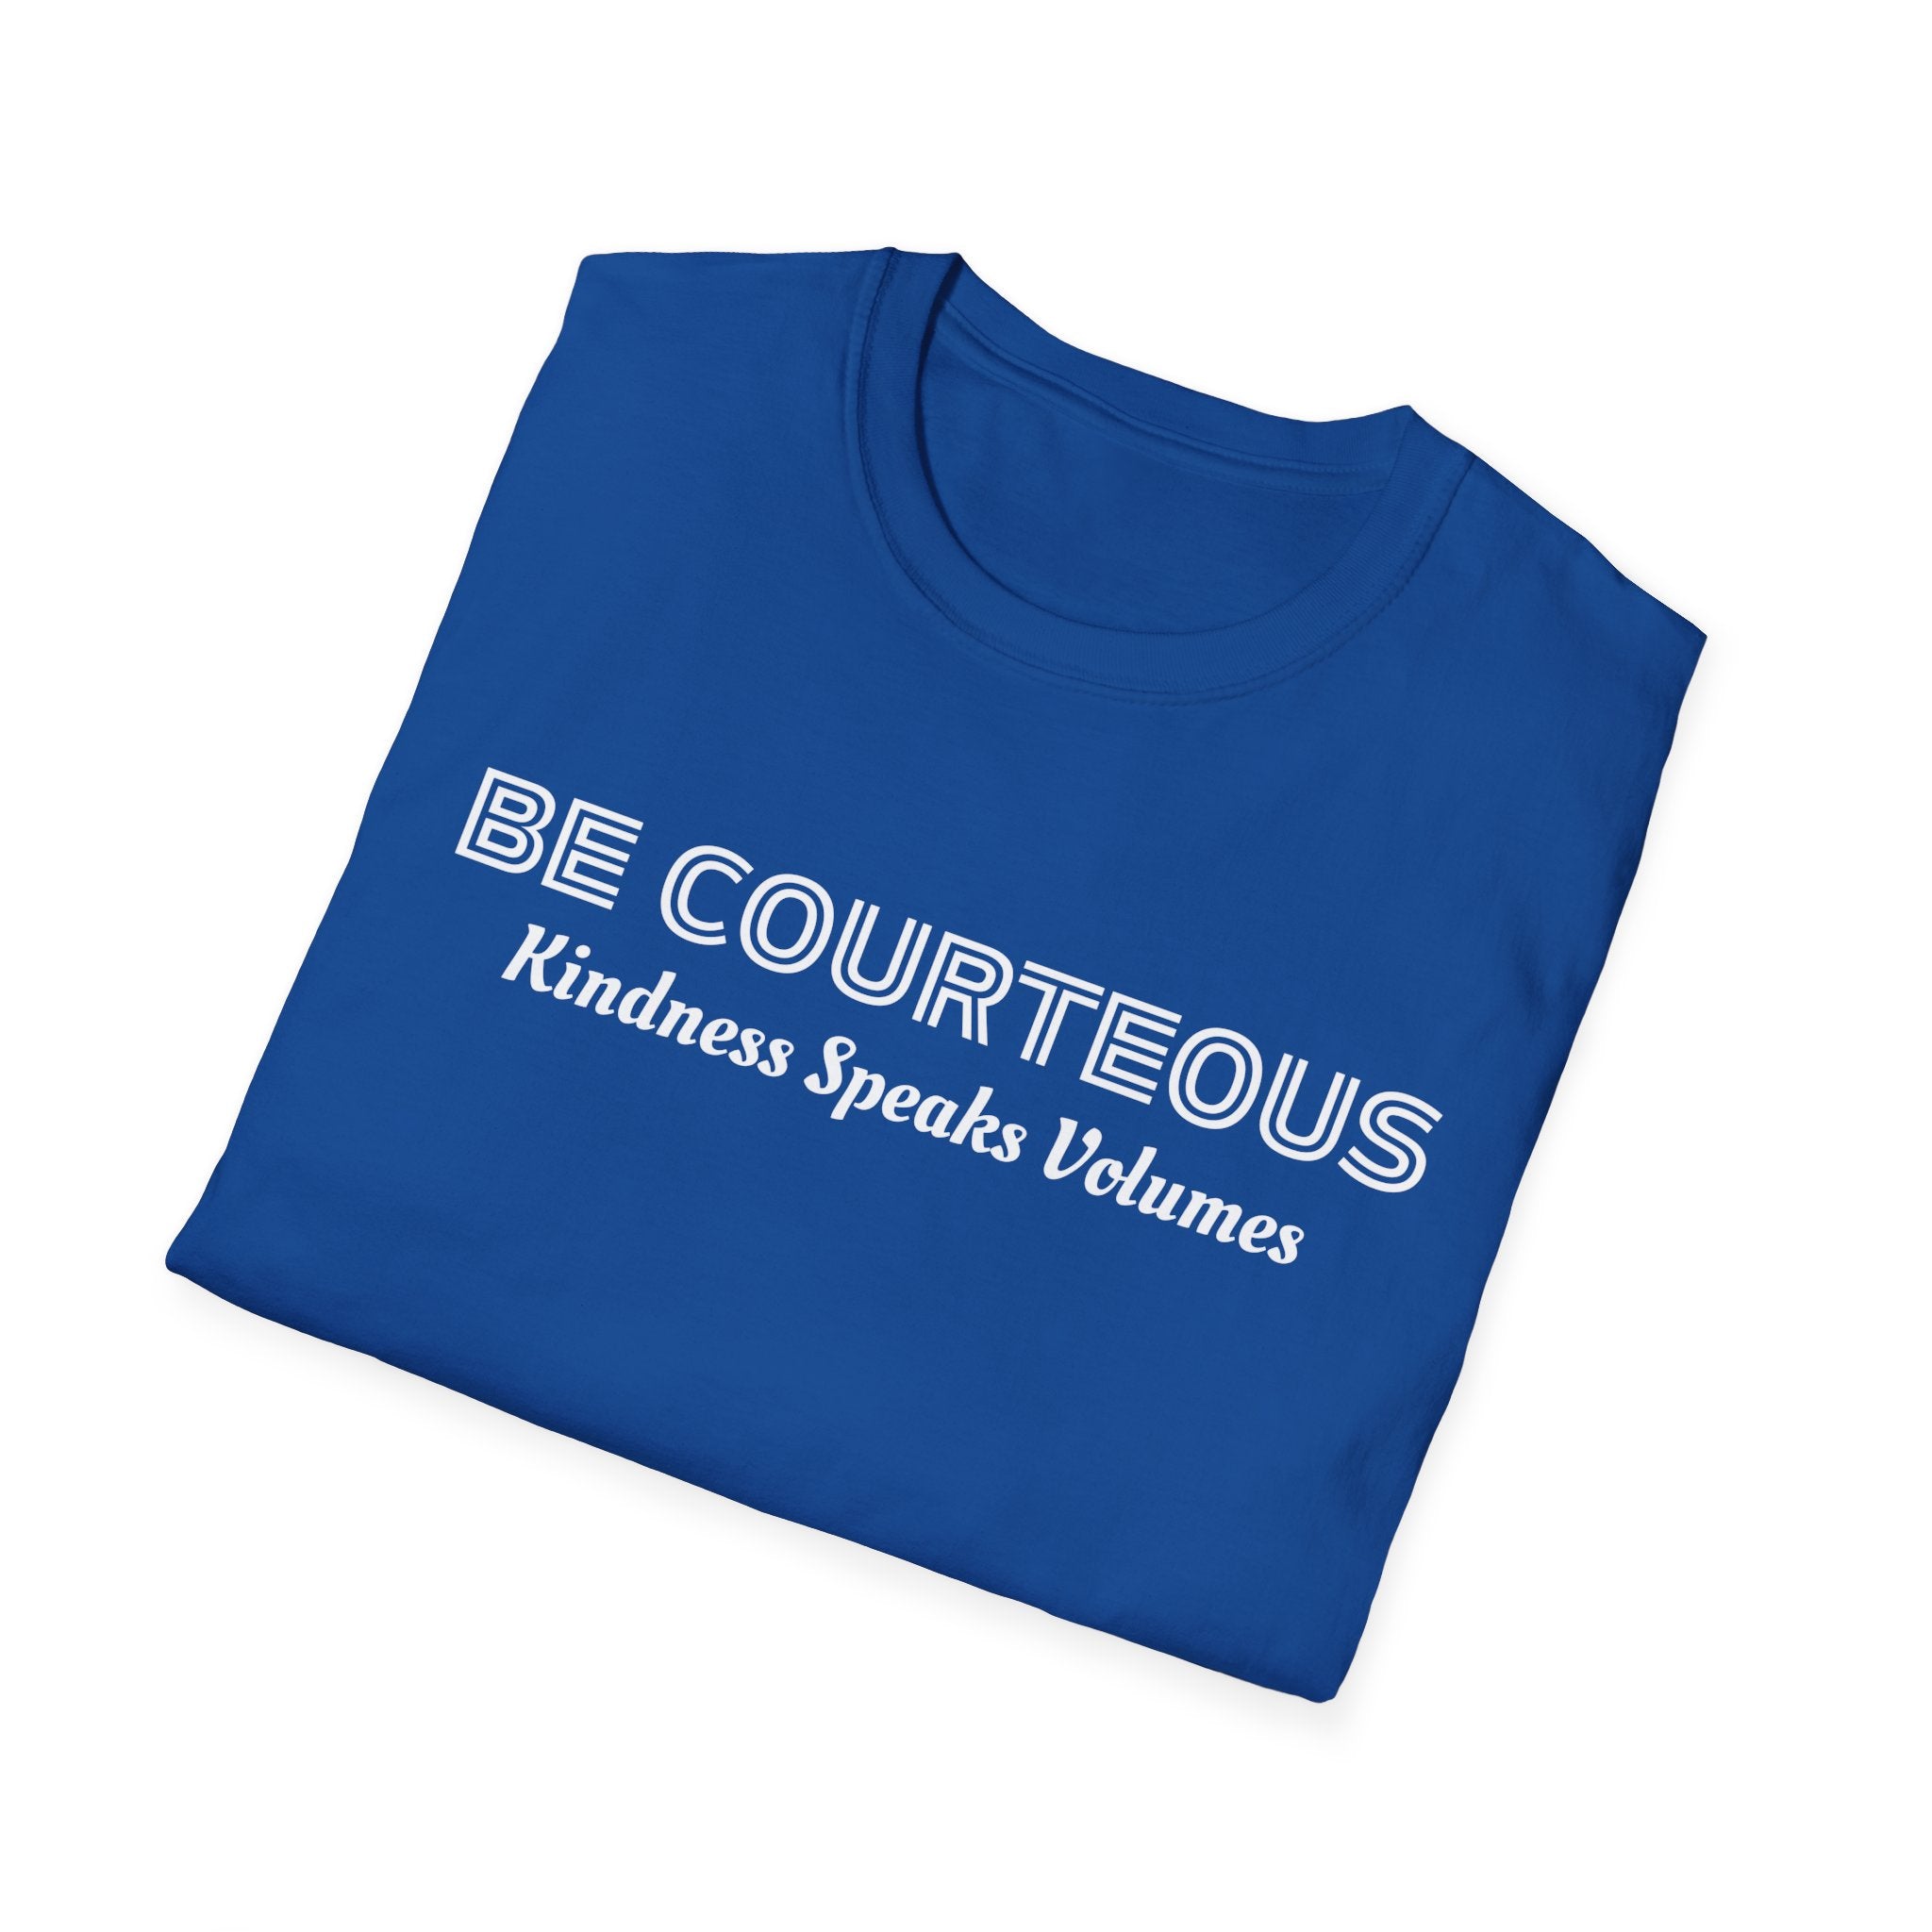 Be Courteous Kindness Speaks Volume Unisex Softstyle T-Shirt Inspirational Shirt, Retro Teacher T-shirt, Cute Teacher shirt, Kindergarten teacher, Teacher T-Shirt, Preschool Teacher